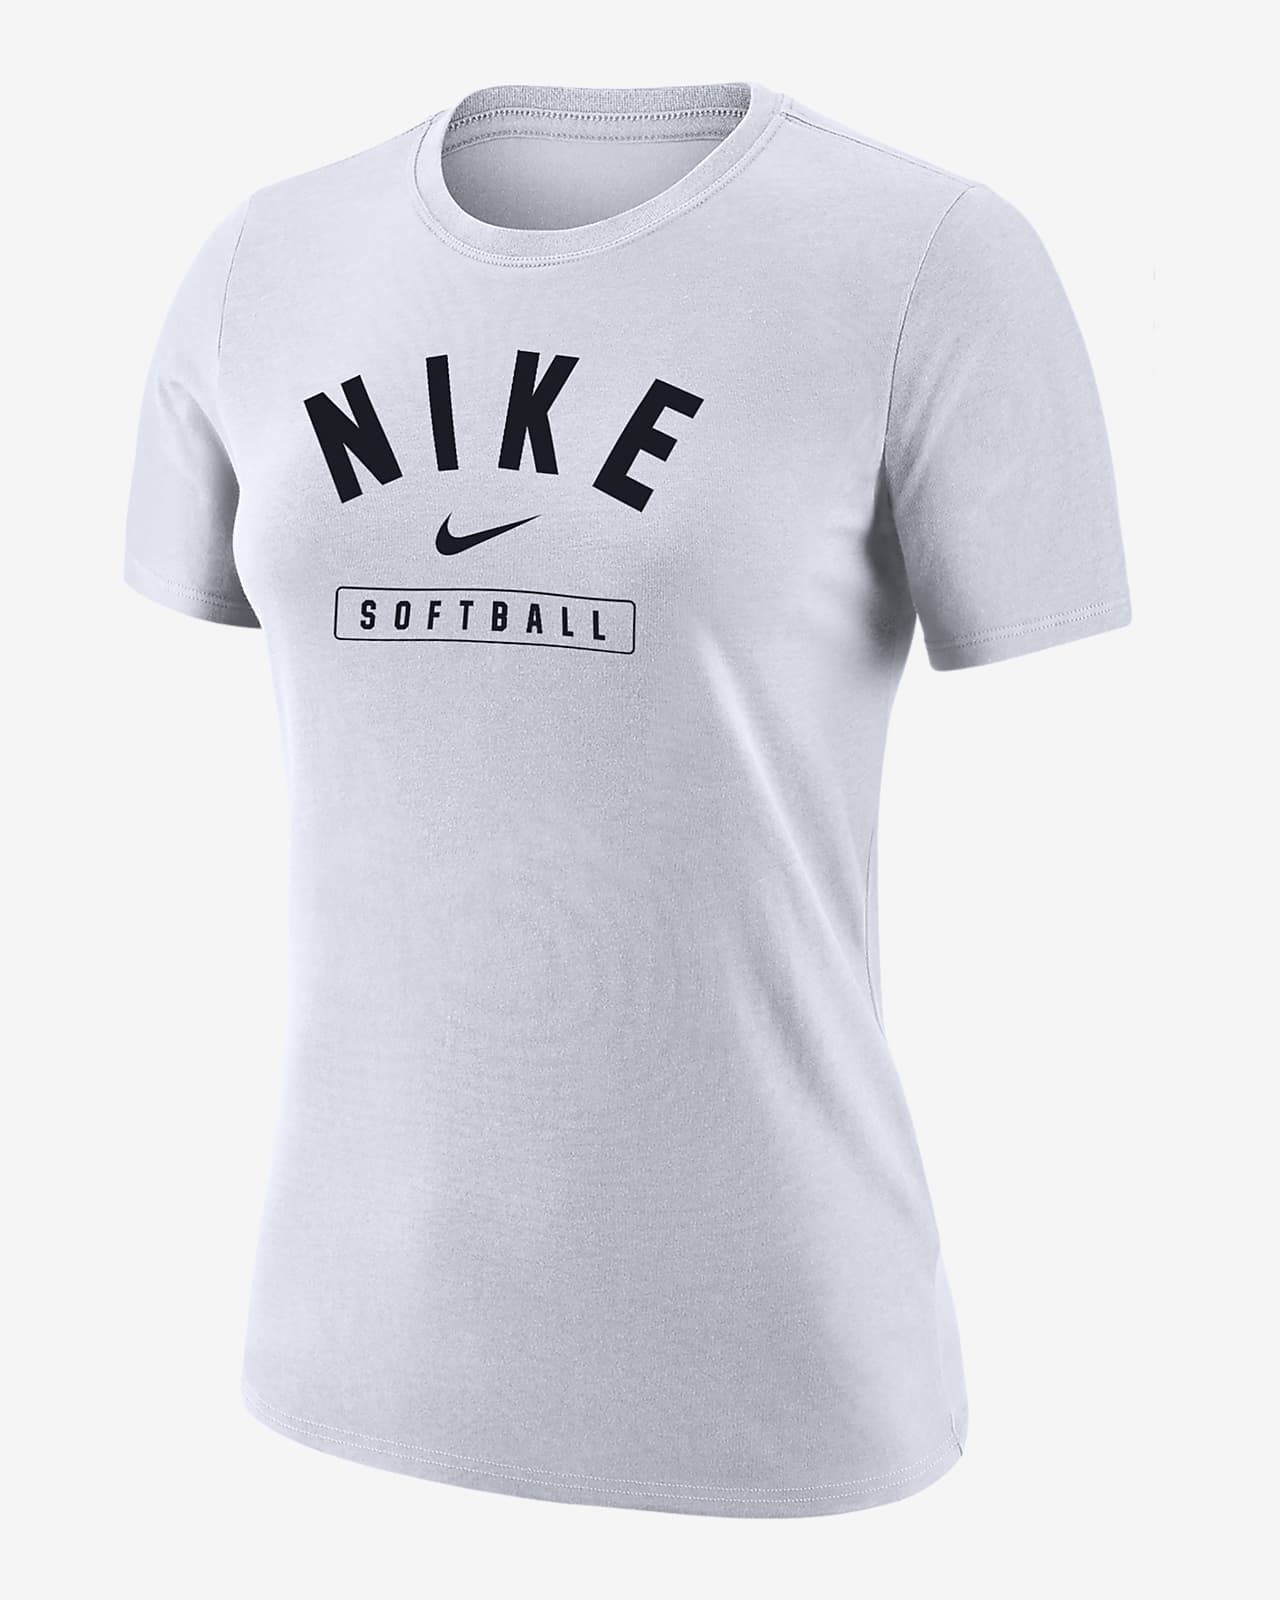 Nike Softball Women's T-Shirt